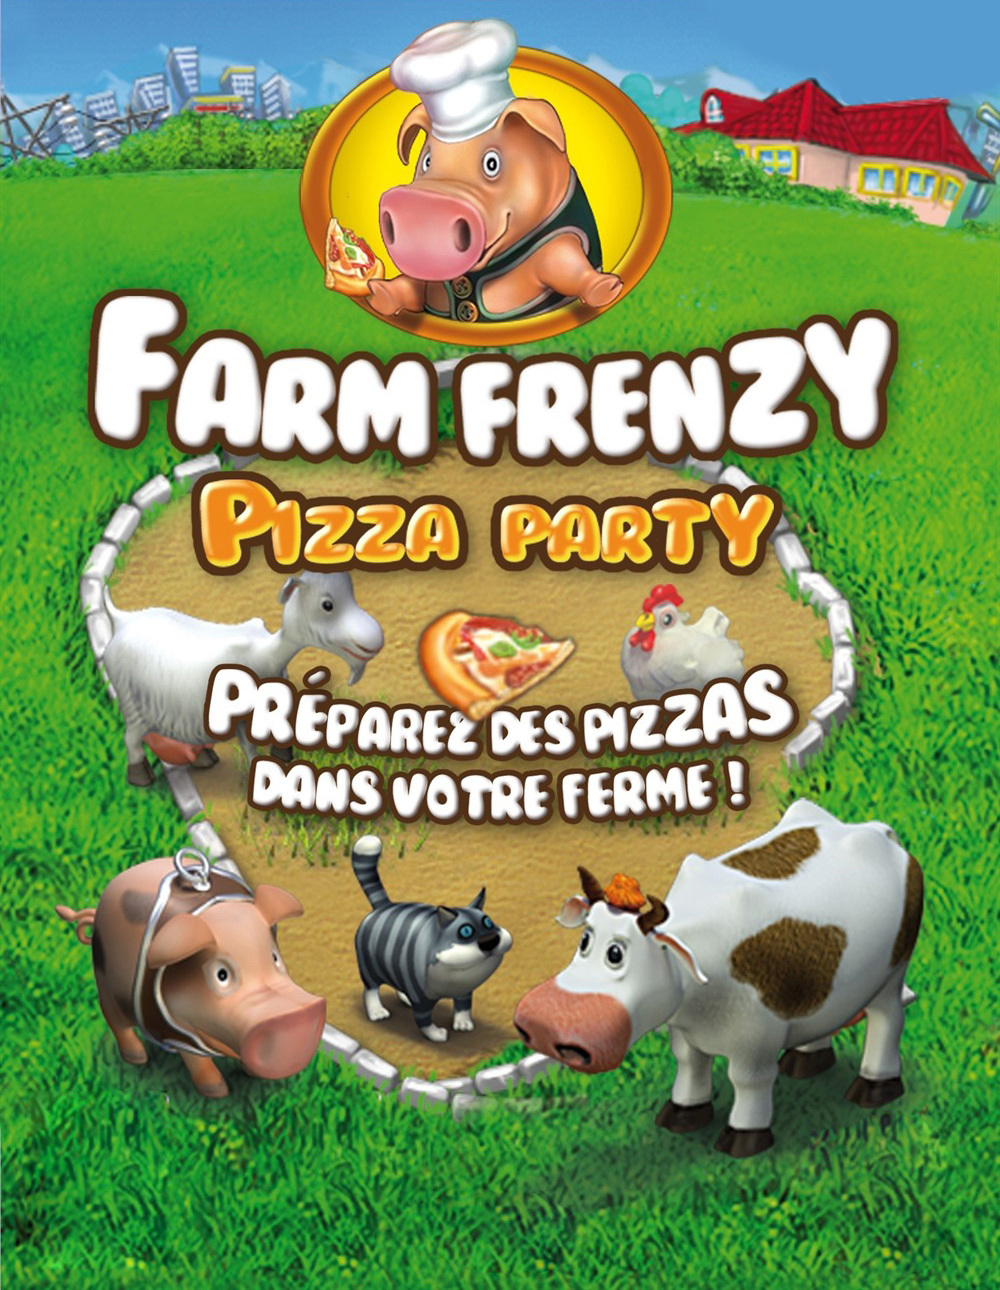 играть онлайн веселая ферма печем пиццу полная версия бесплатно фото 43